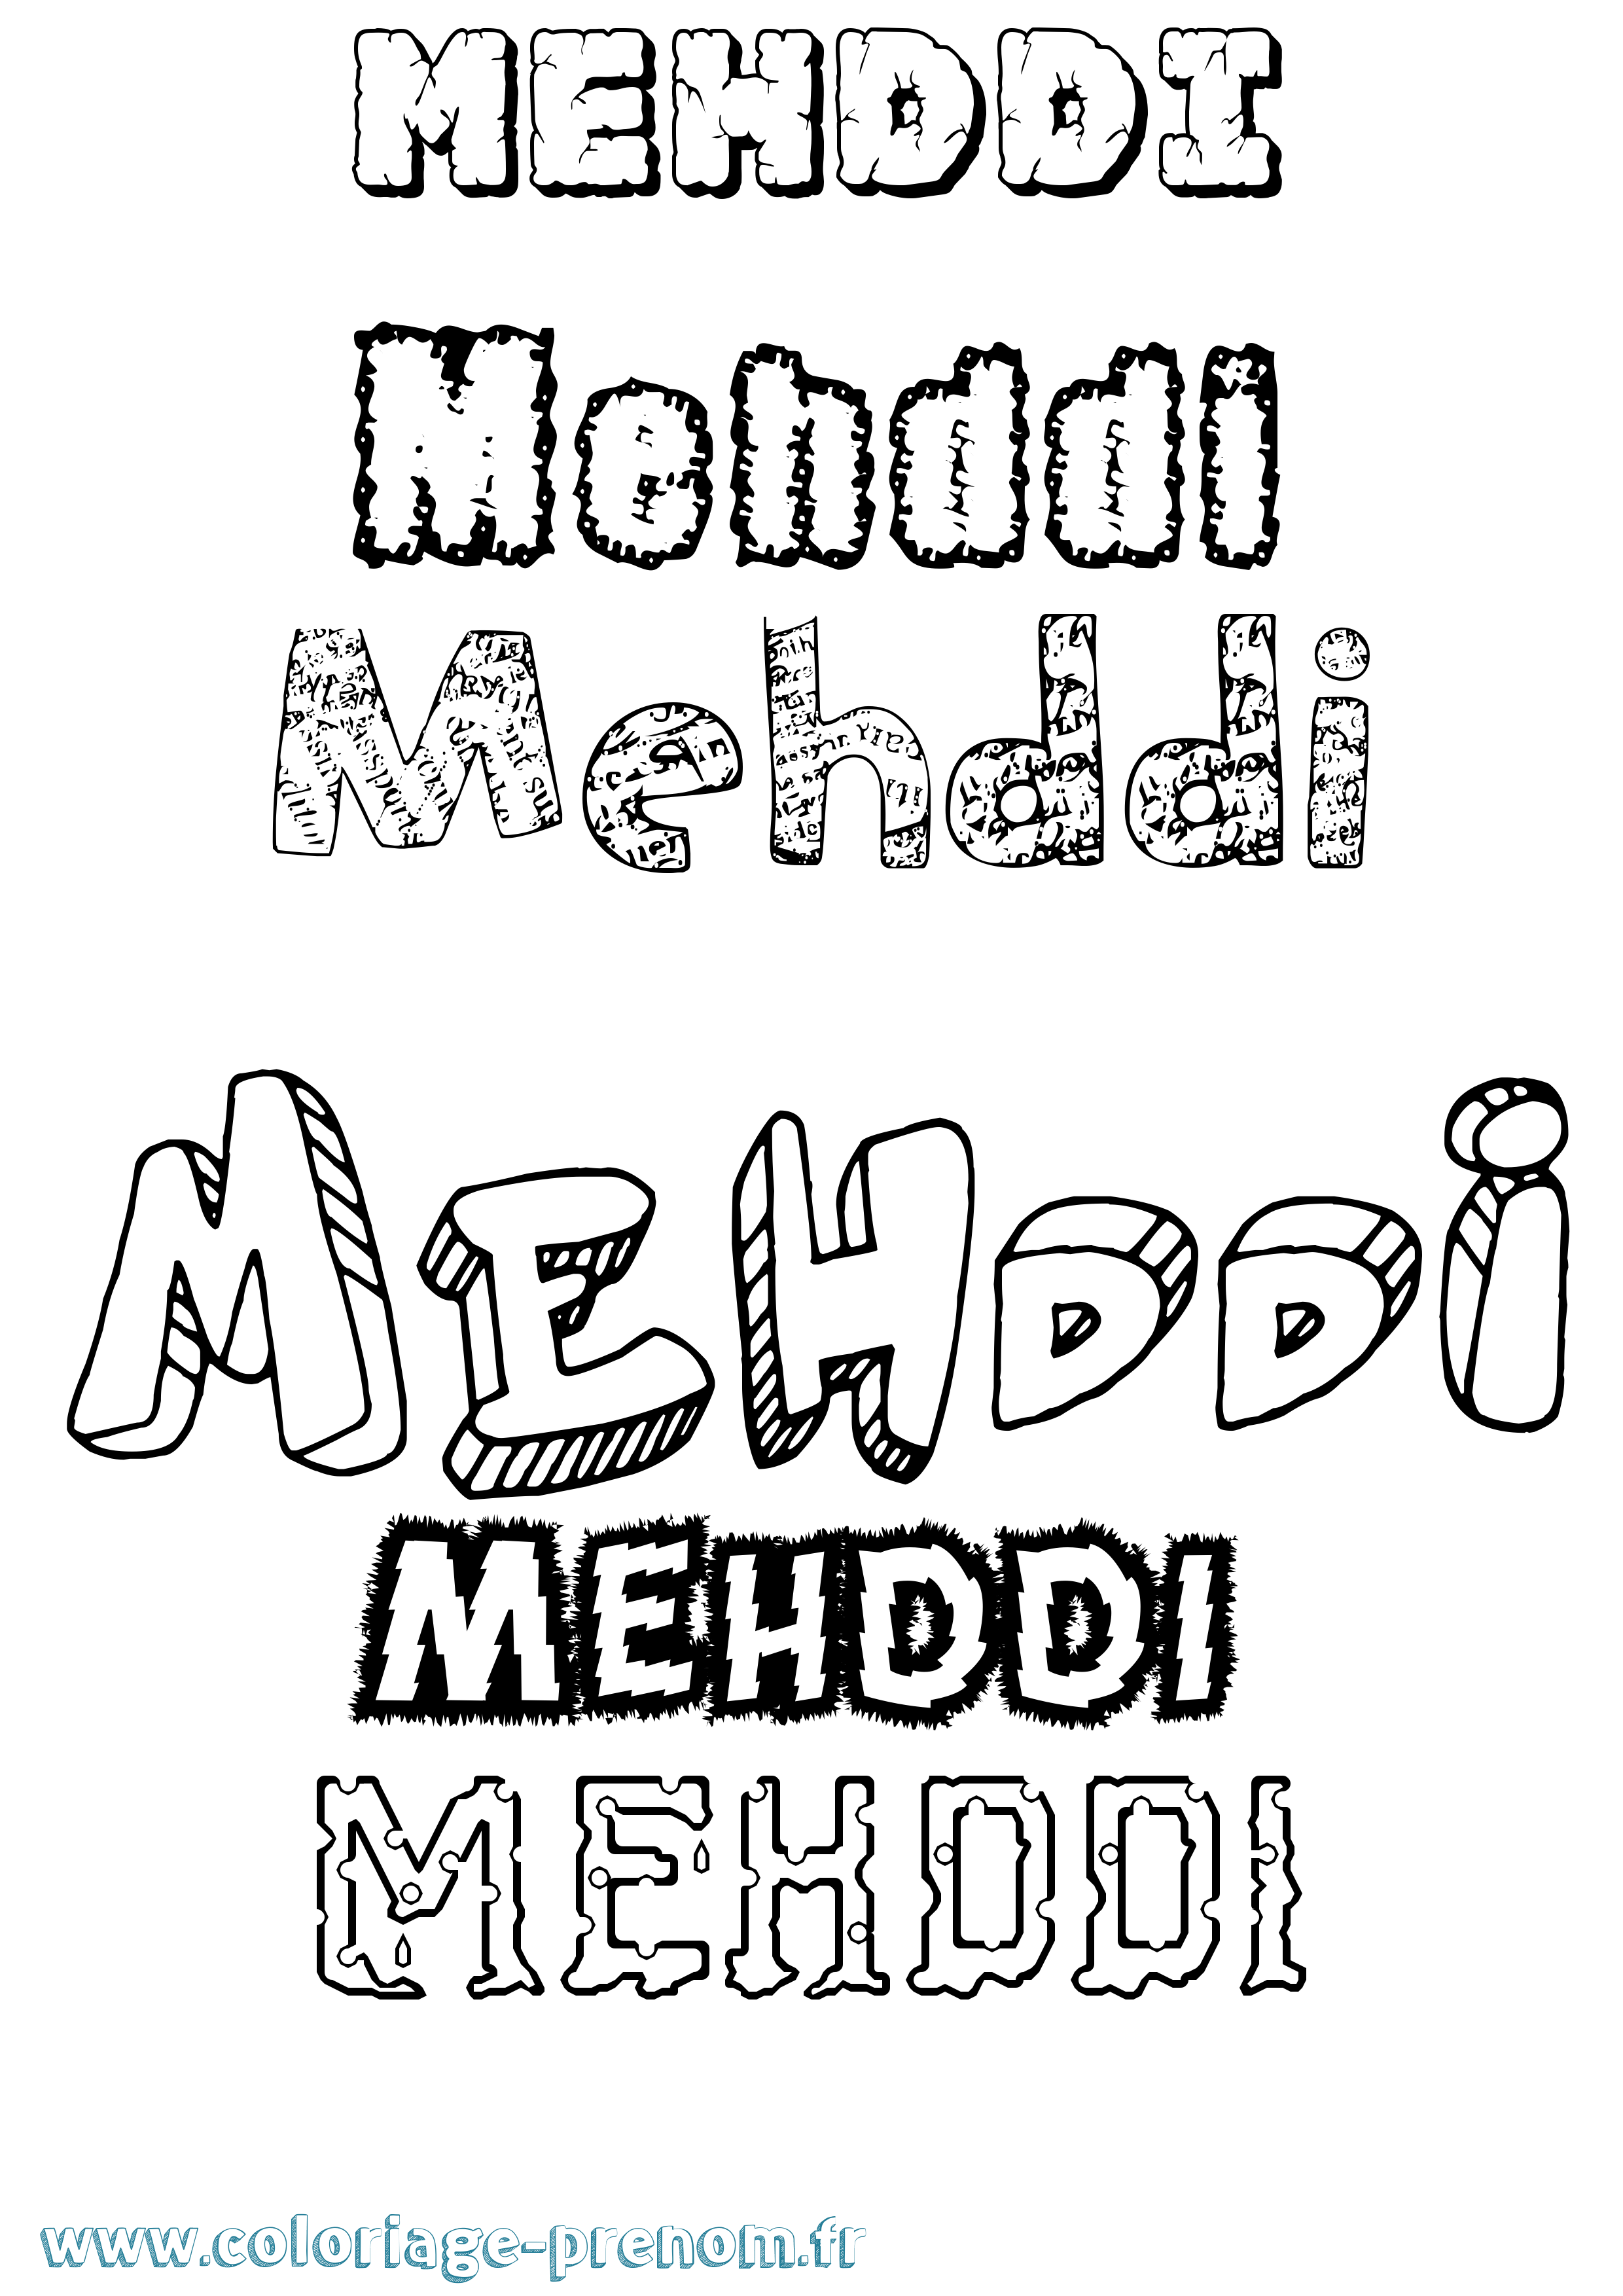 Coloriage prénom Mehddi Destructuré